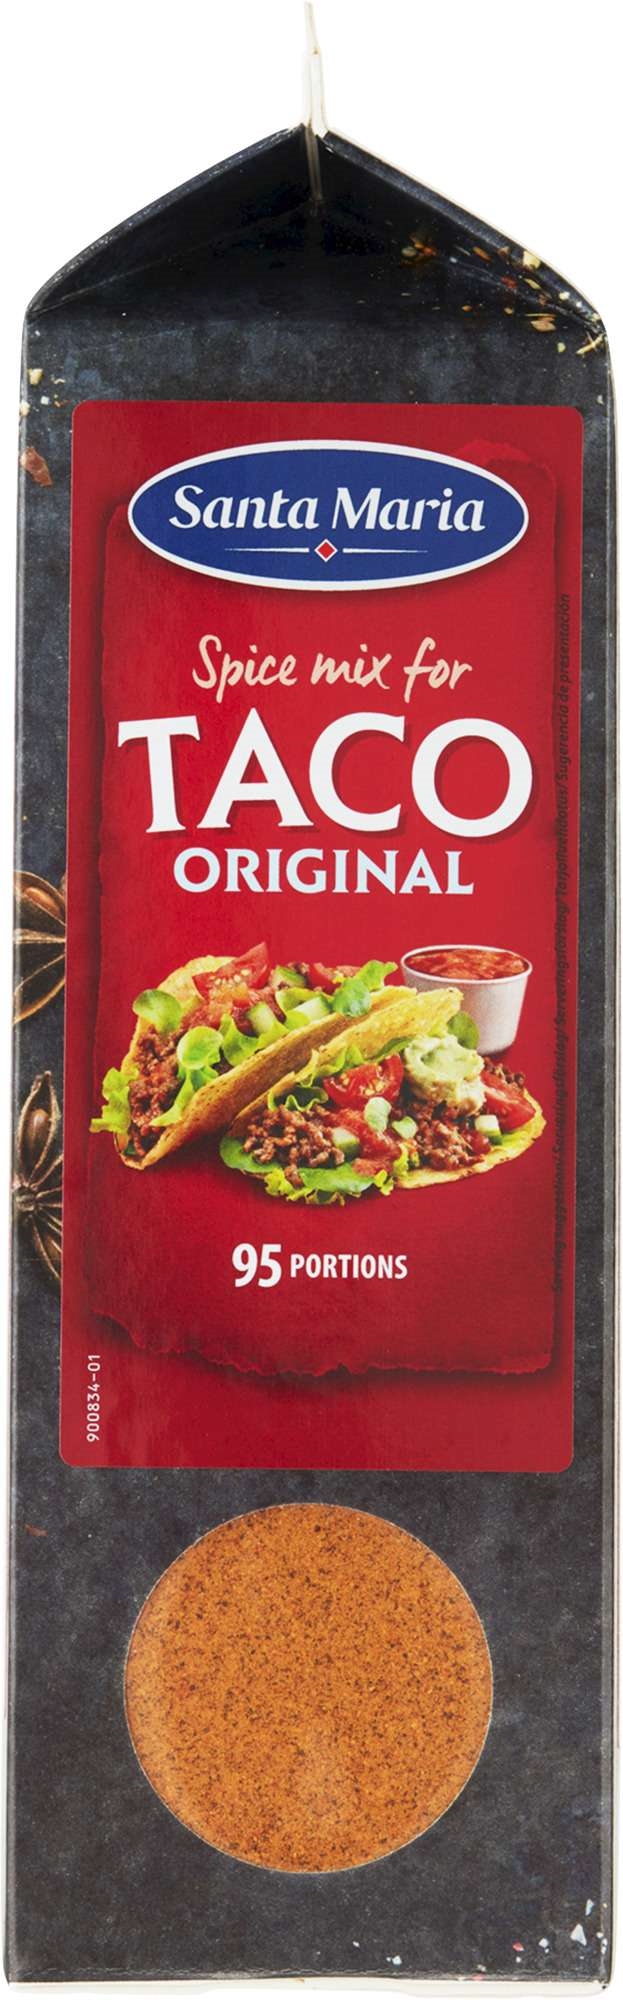 Taco original spice mix   532g